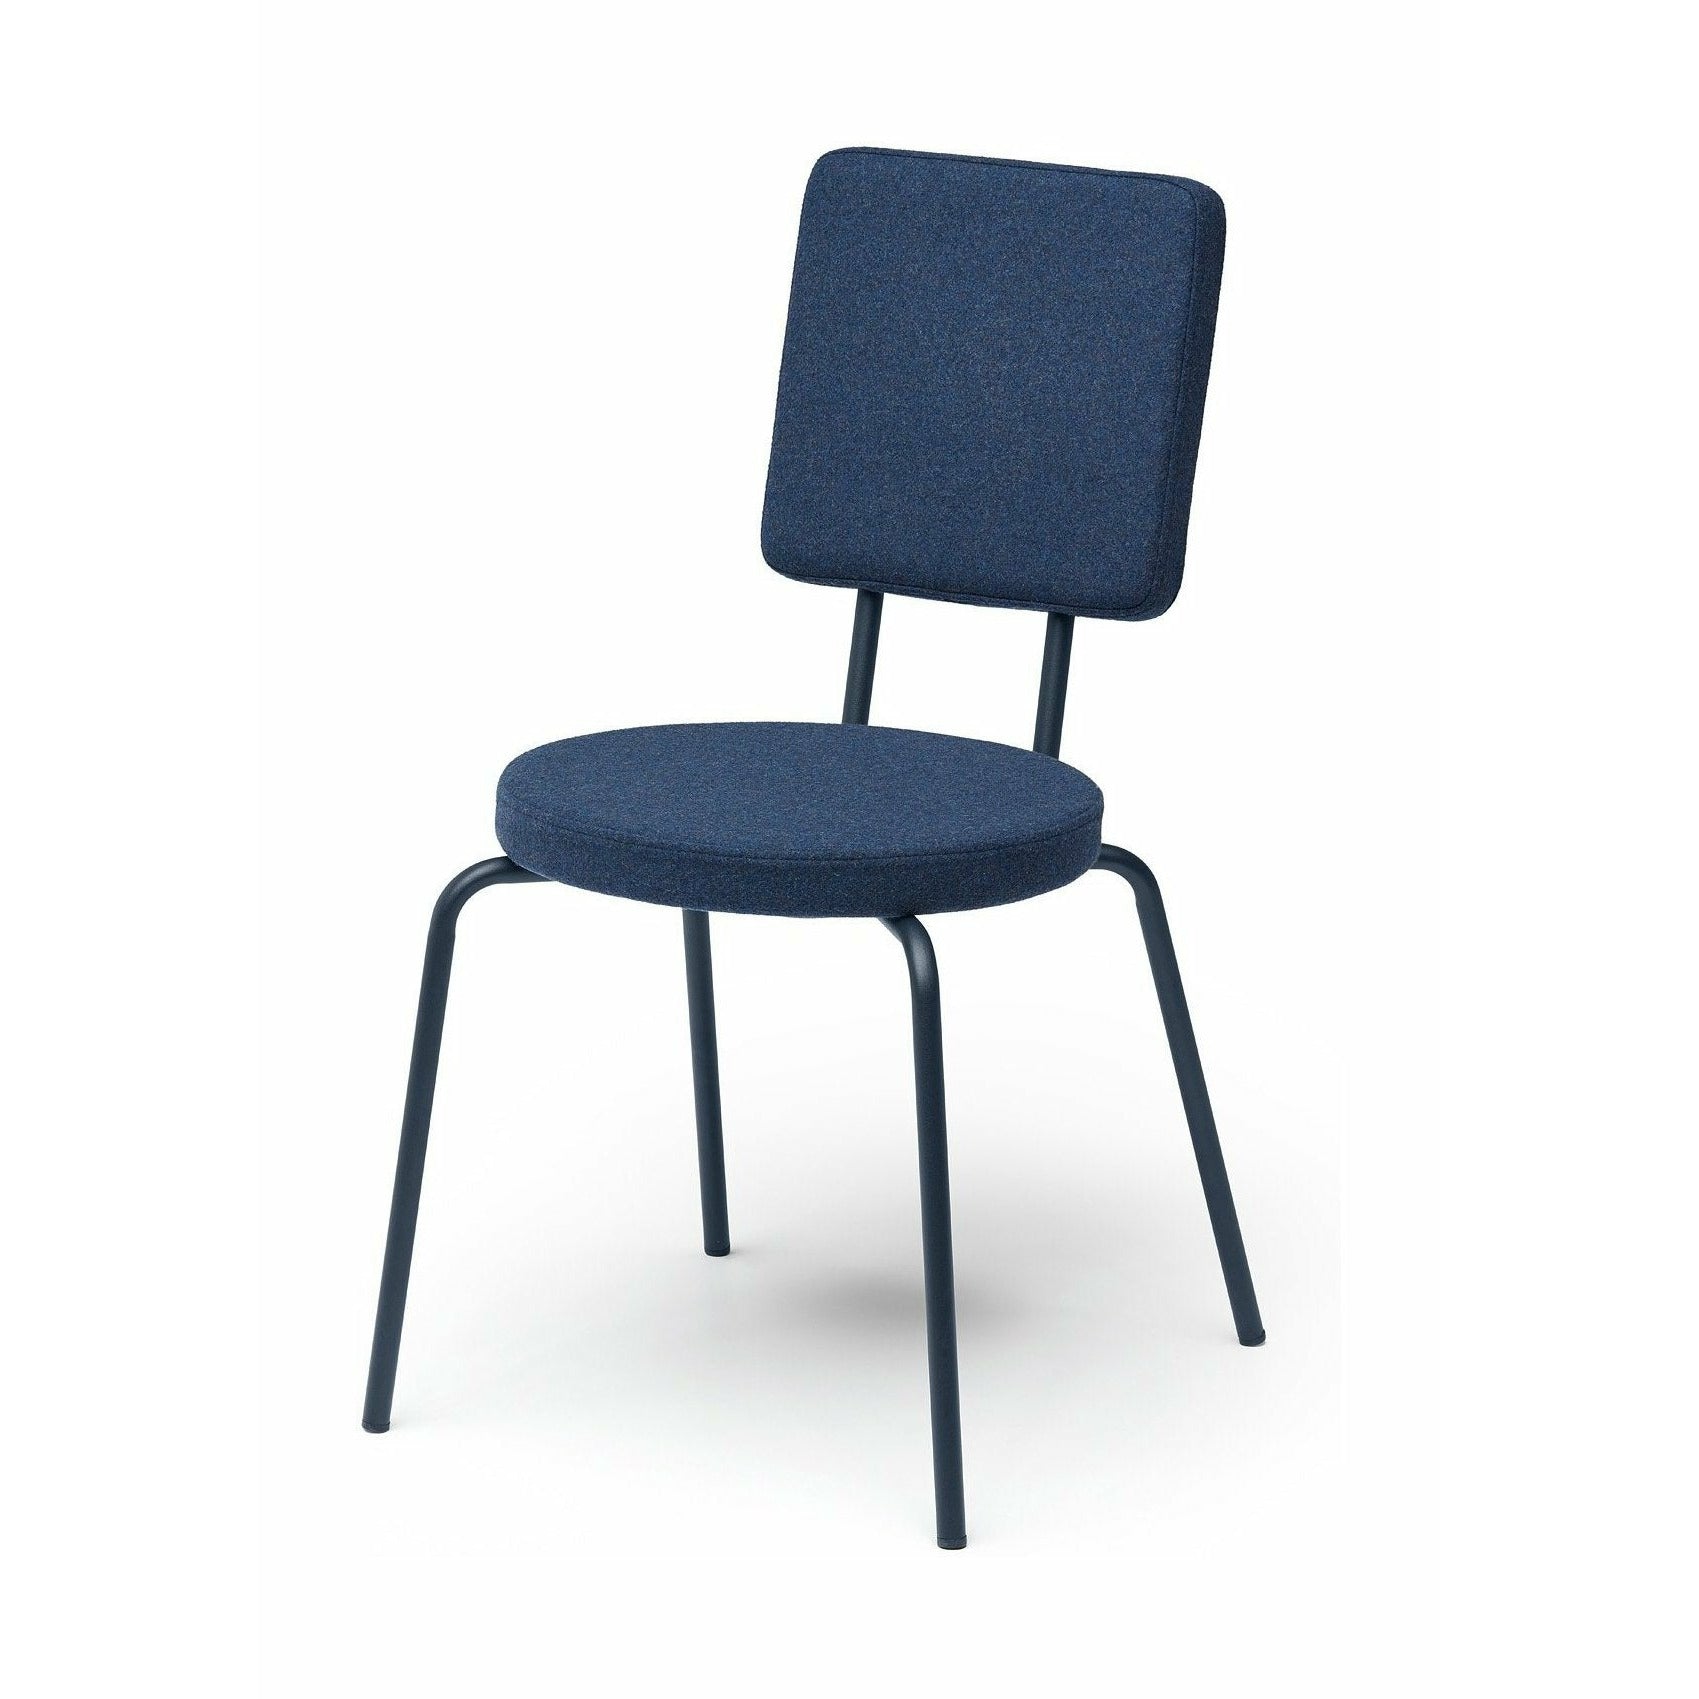 Puik Option Chair Seat Round / Backrest Square, Dark Blue